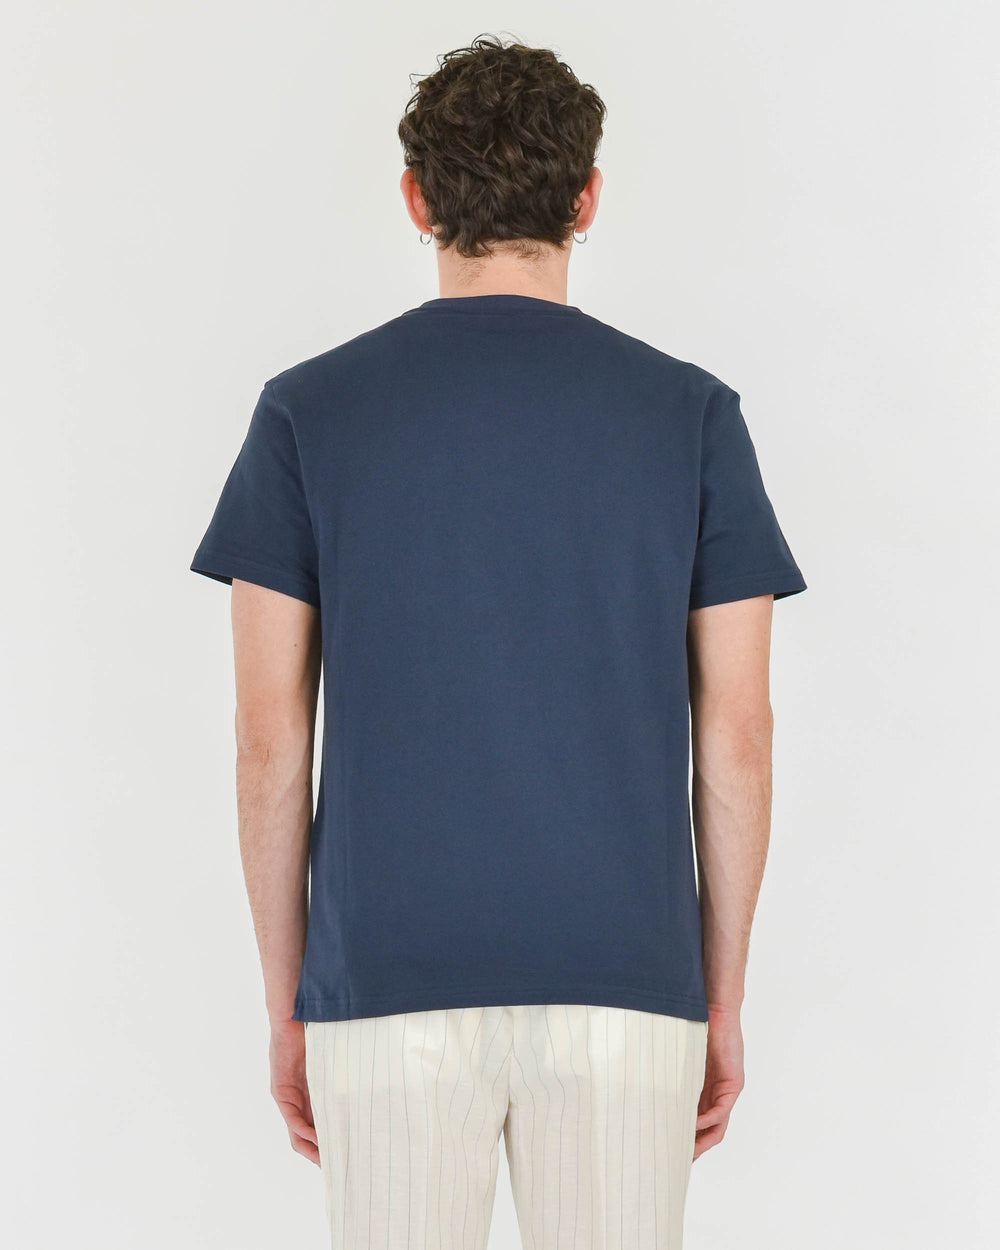 blue crew-neck cotton t-shirt